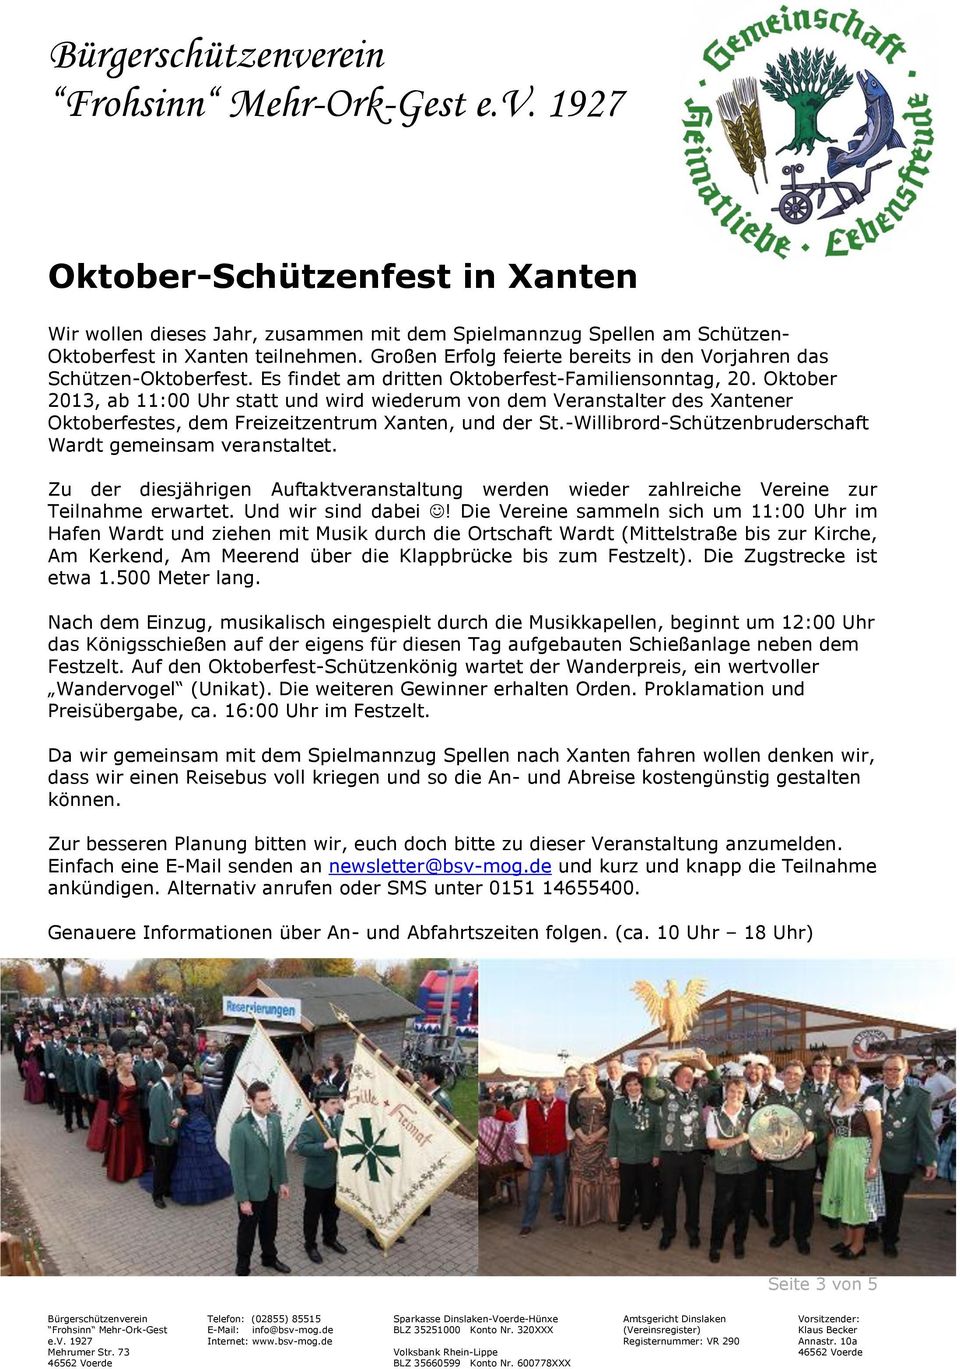 Oktober 2013, ab 11:00 Uhr statt und wird wiederum von dem Veranstalter des Xantener Oktoberfestes, dem Freizeitzentrum Xanten, und der St.